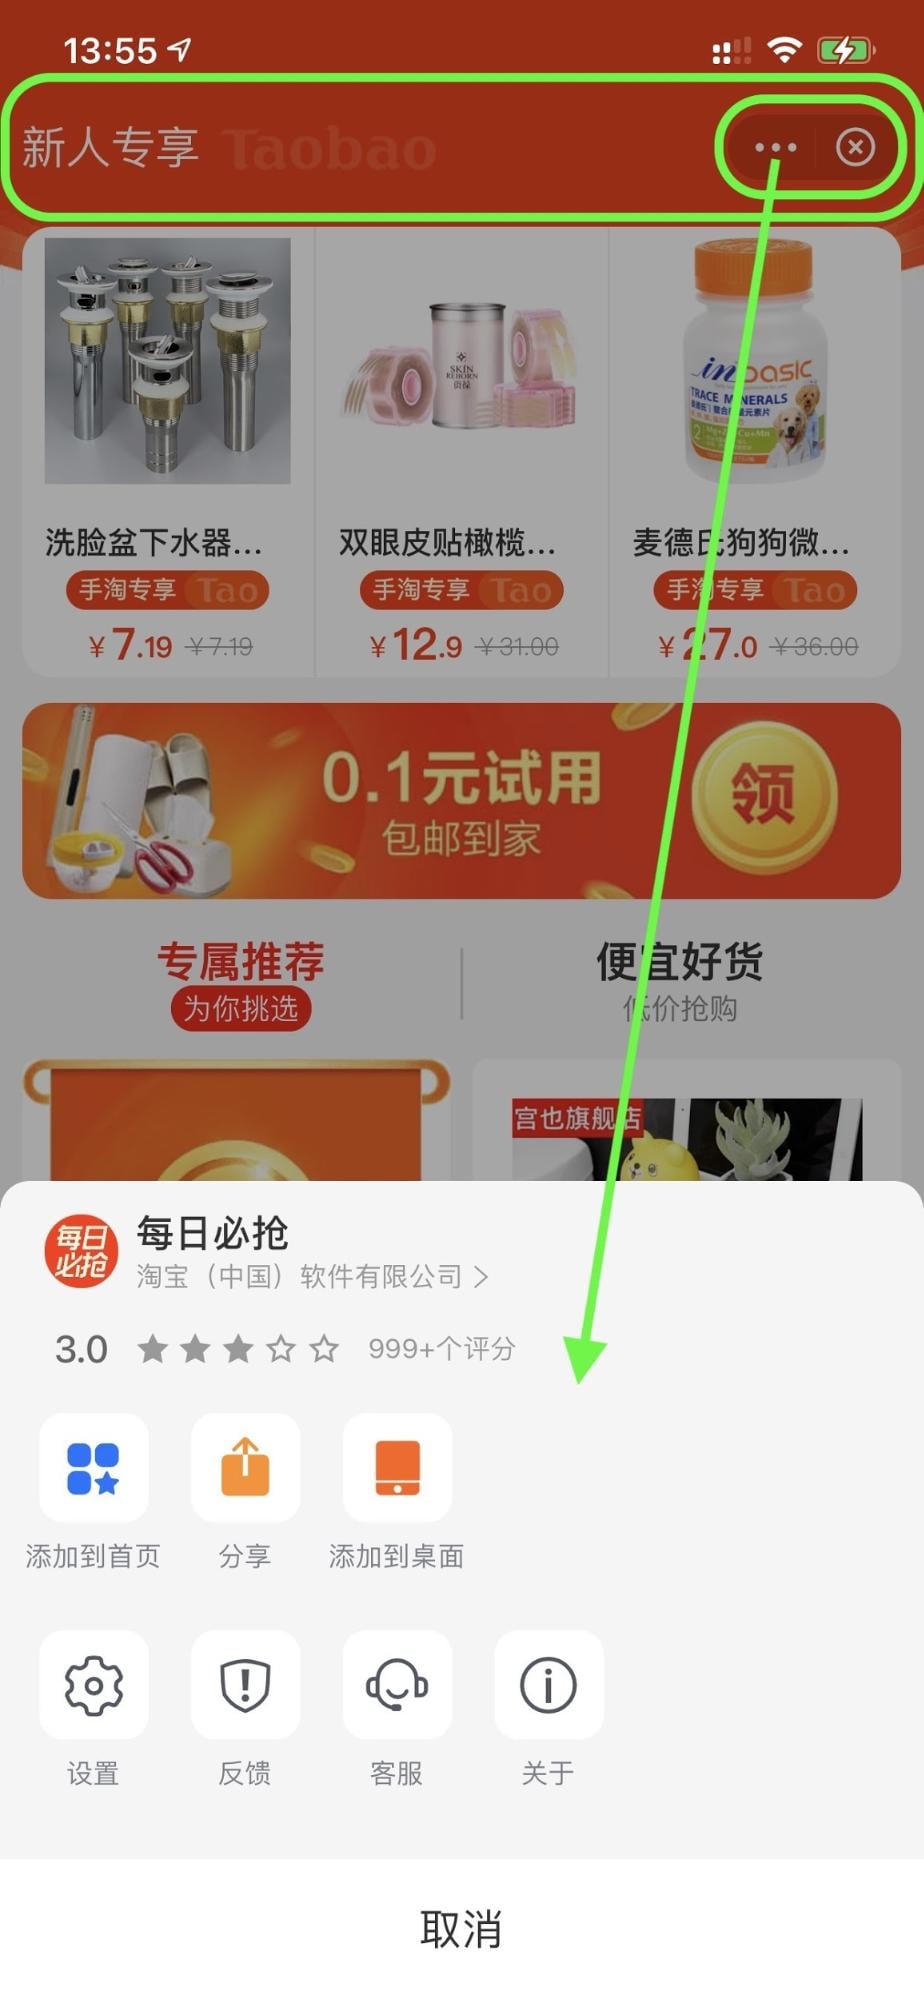 Alipay 超級應用程式正在執行購物迷你應用程式，頂端為醒目顯示的頂端列、動作選單按鈕和關閉按鈕。動作選單已開啟。